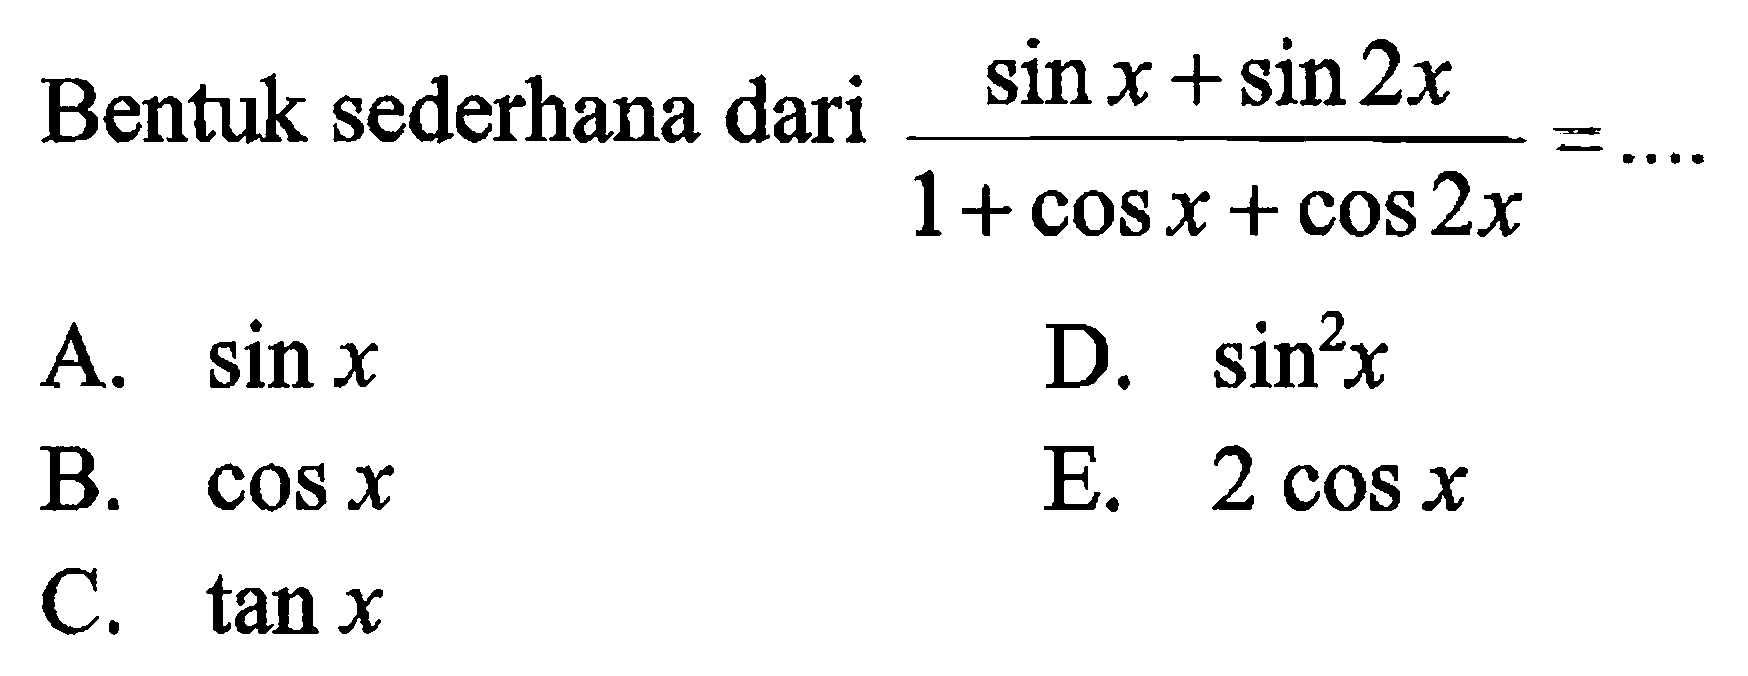 Bentuk sederhana dari (sin x+ sin 2x)/(1+cos x+cos 2x)=....